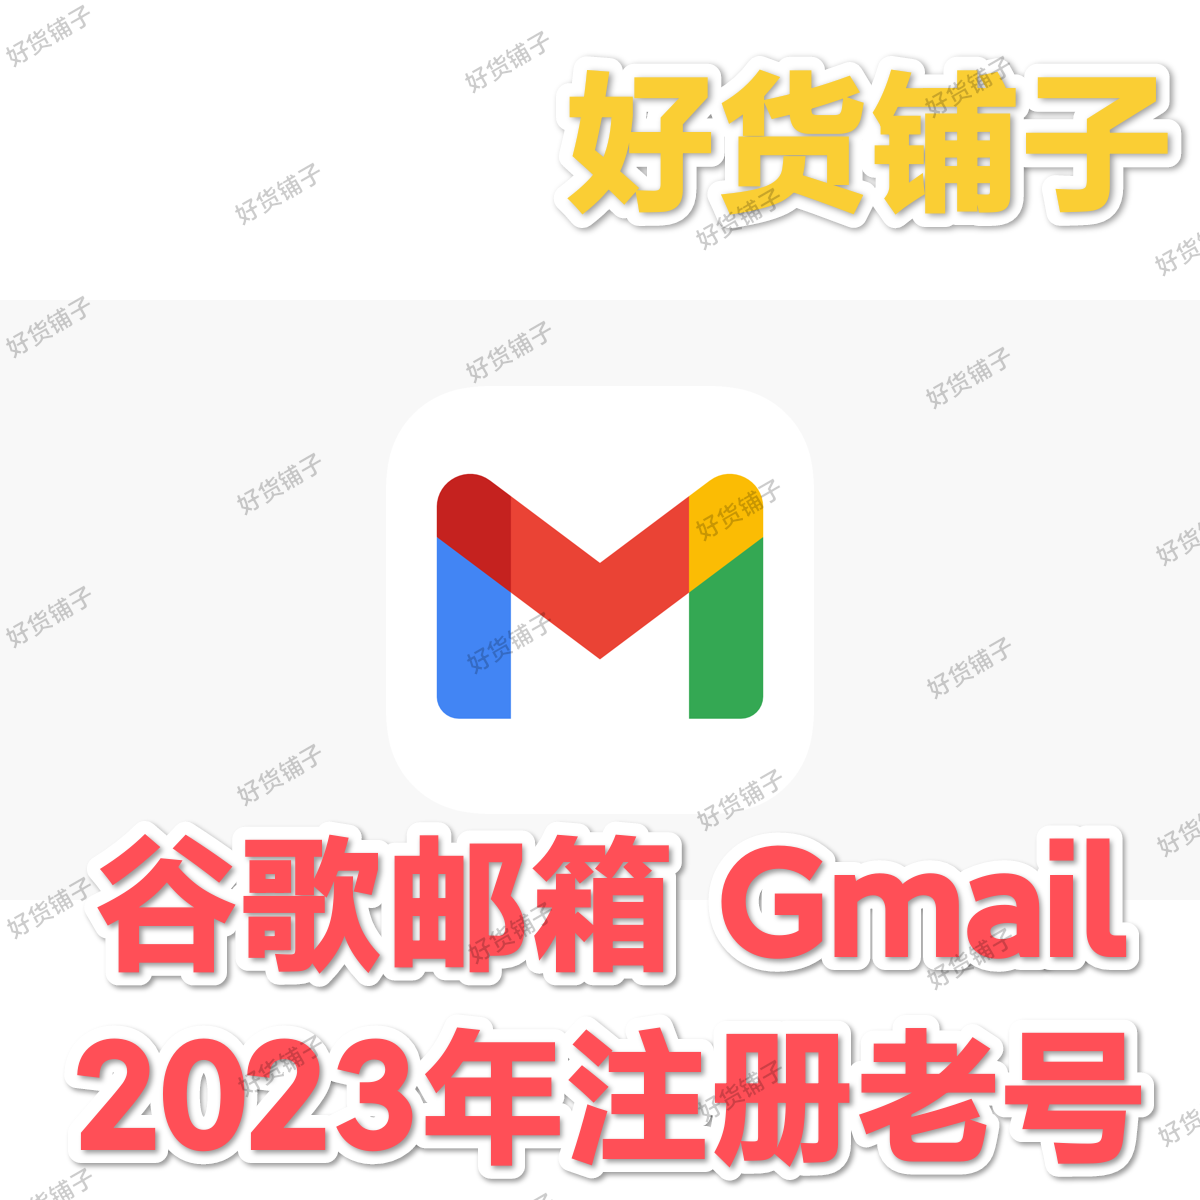 Gmail谷歌账号（2023年注册老号）